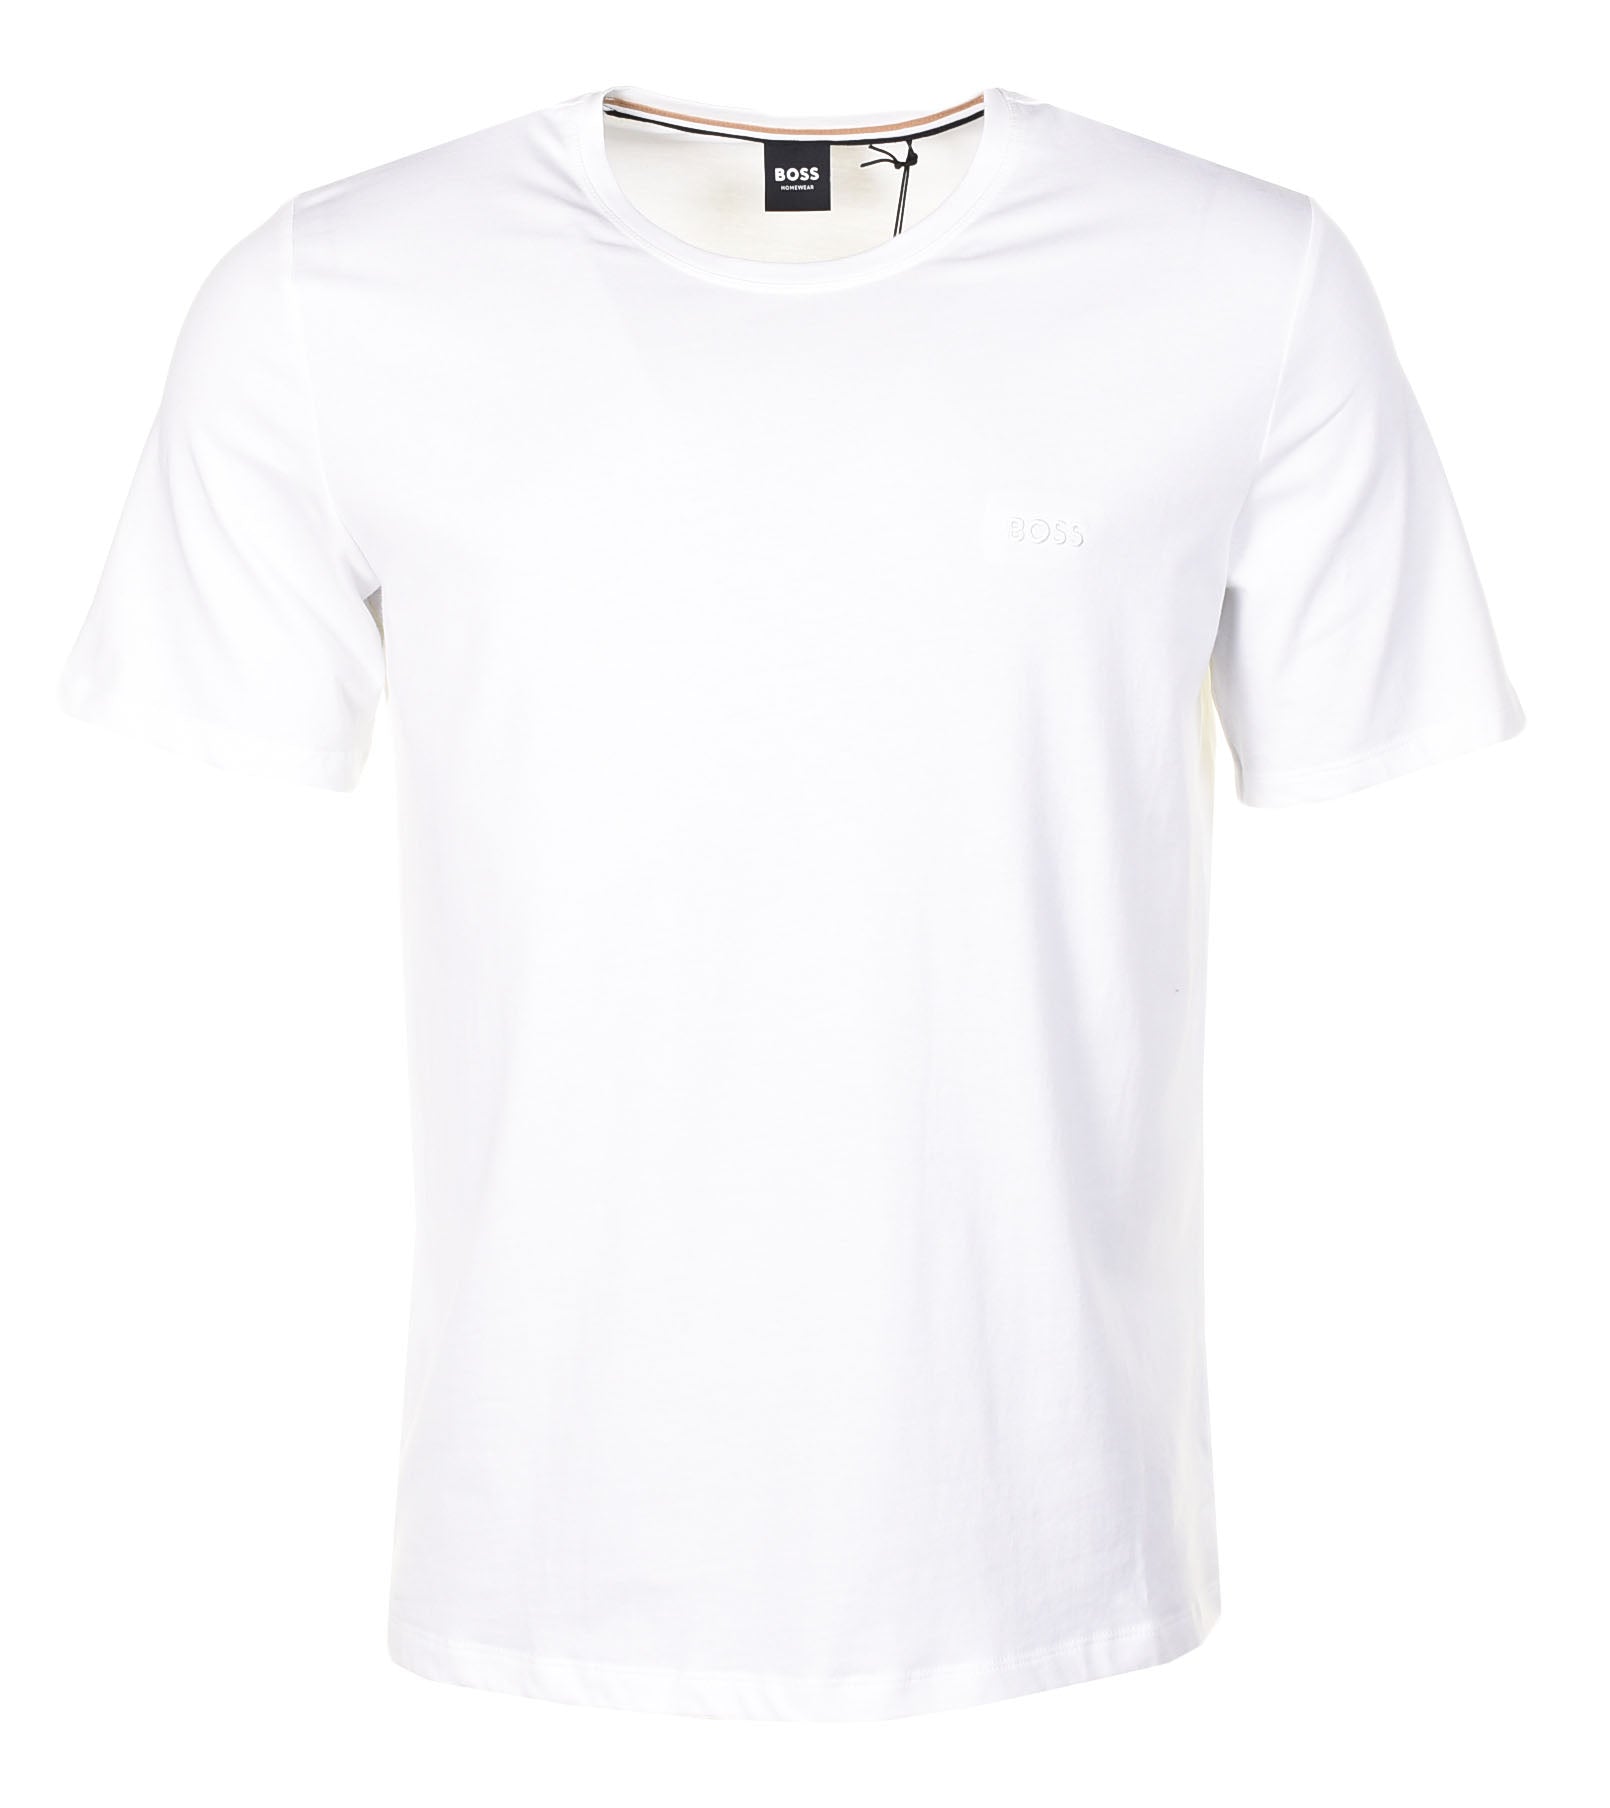 Mix & Match T Shirt White